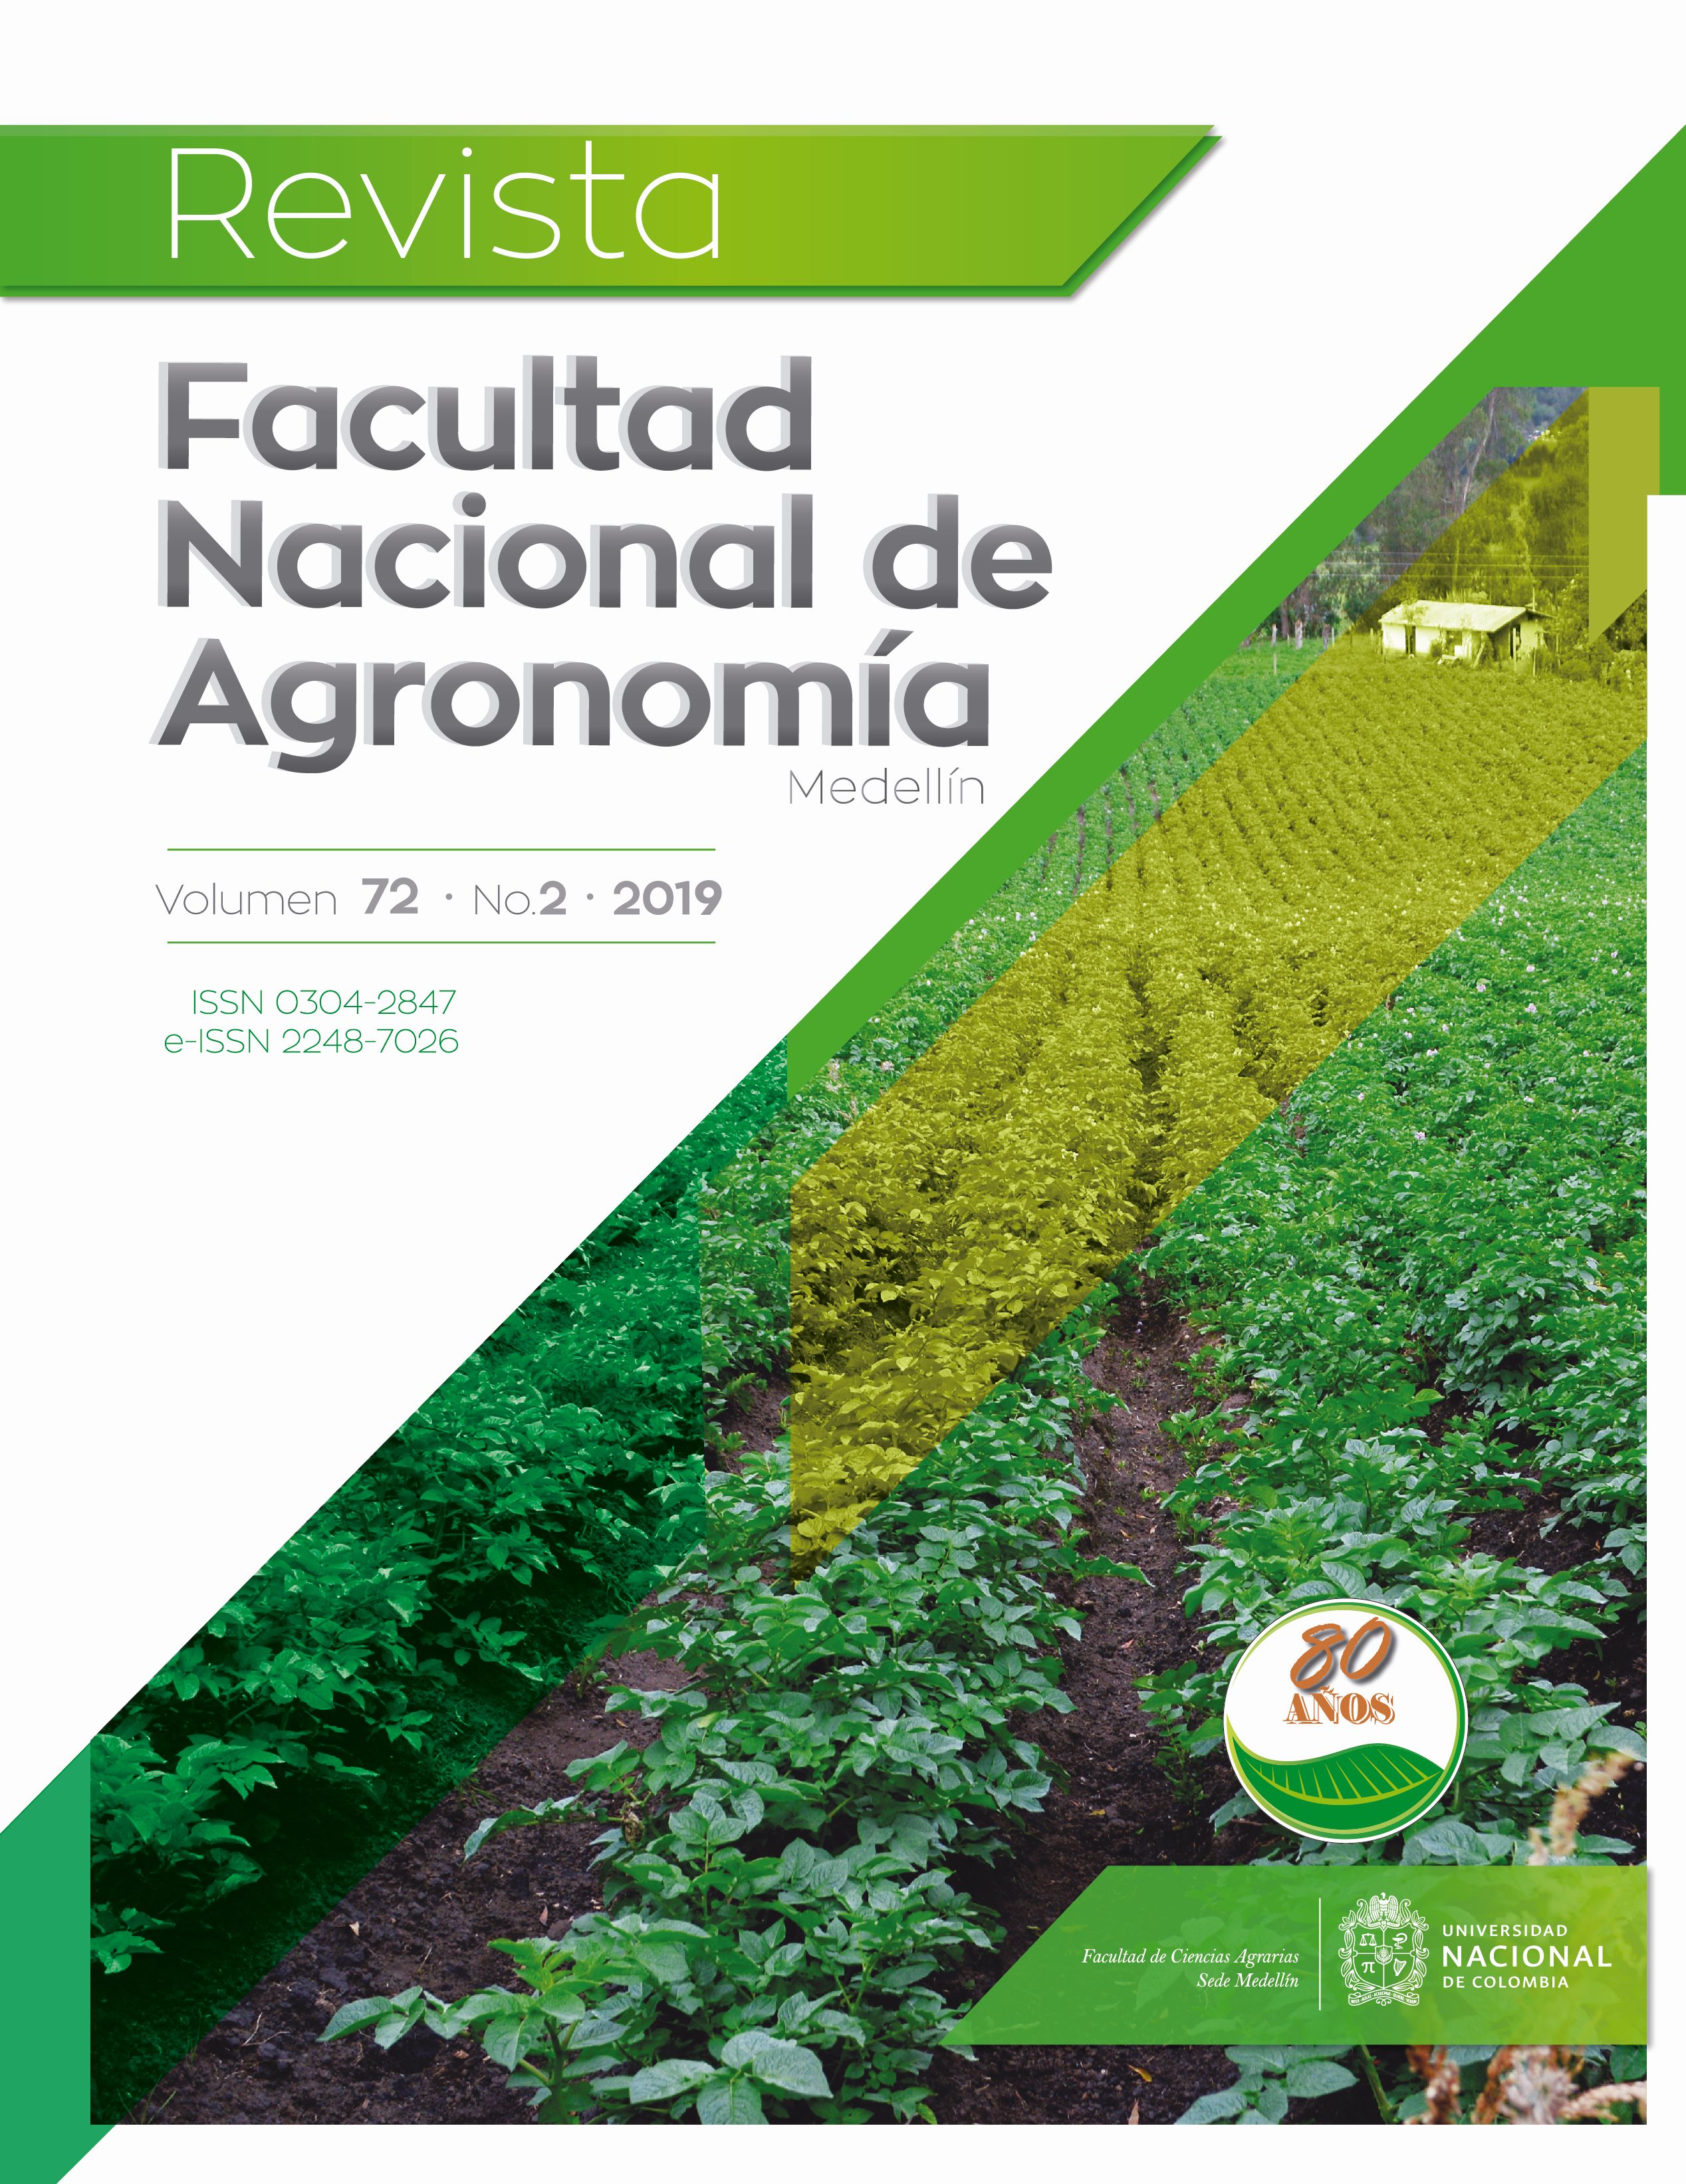 Vol. 72 No. 2 (2019) | Revista Facultad Nacional de Agronomía Medellín